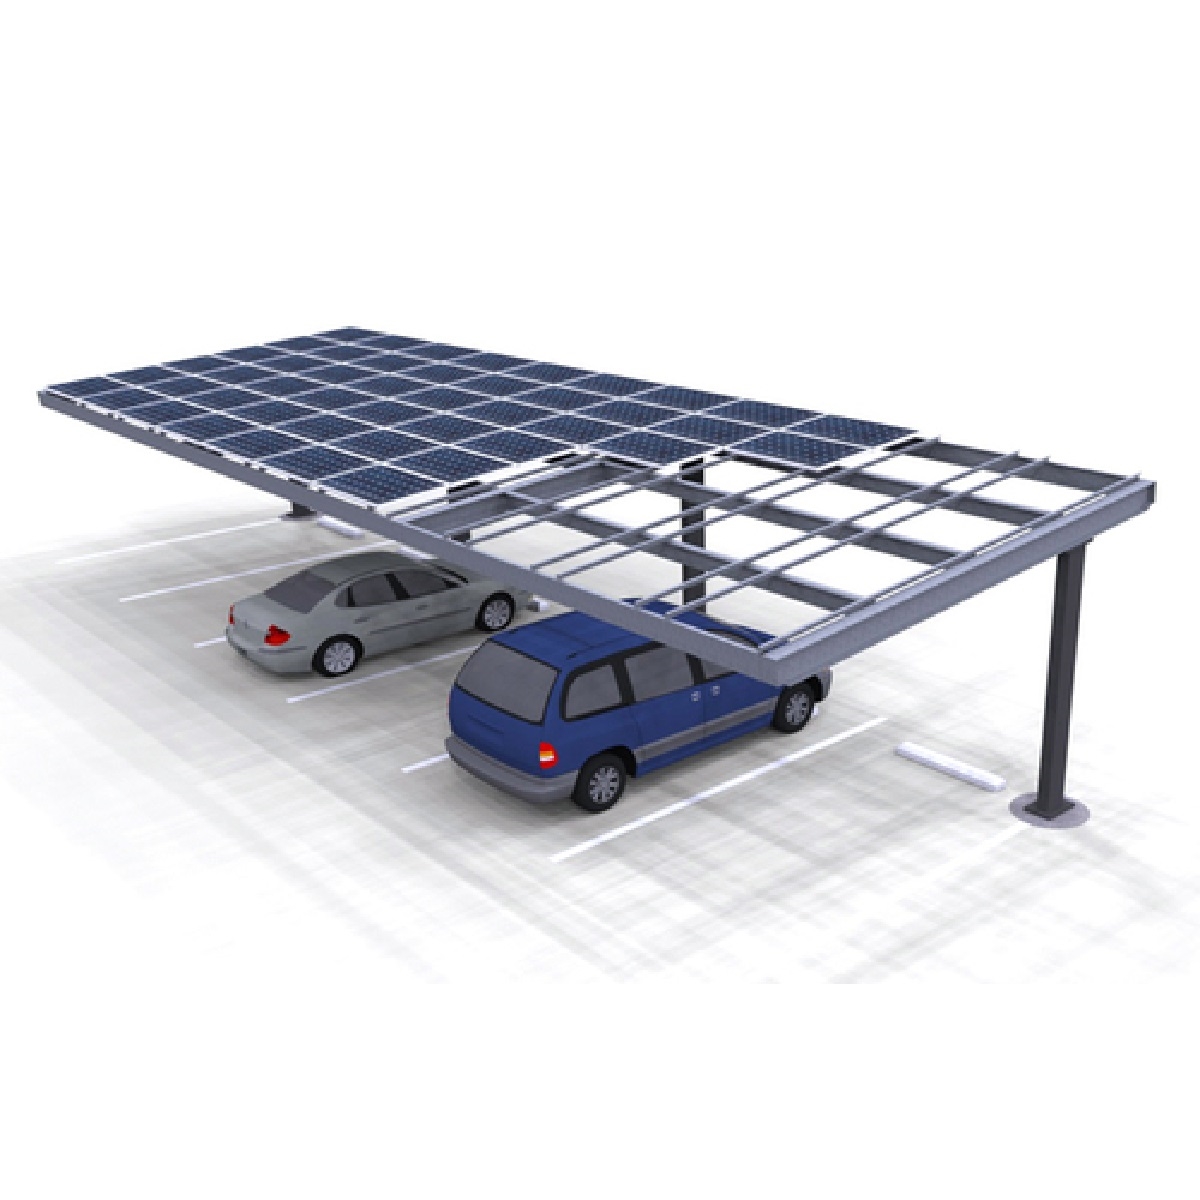 Carport Structures Solar Carport Single Column Single